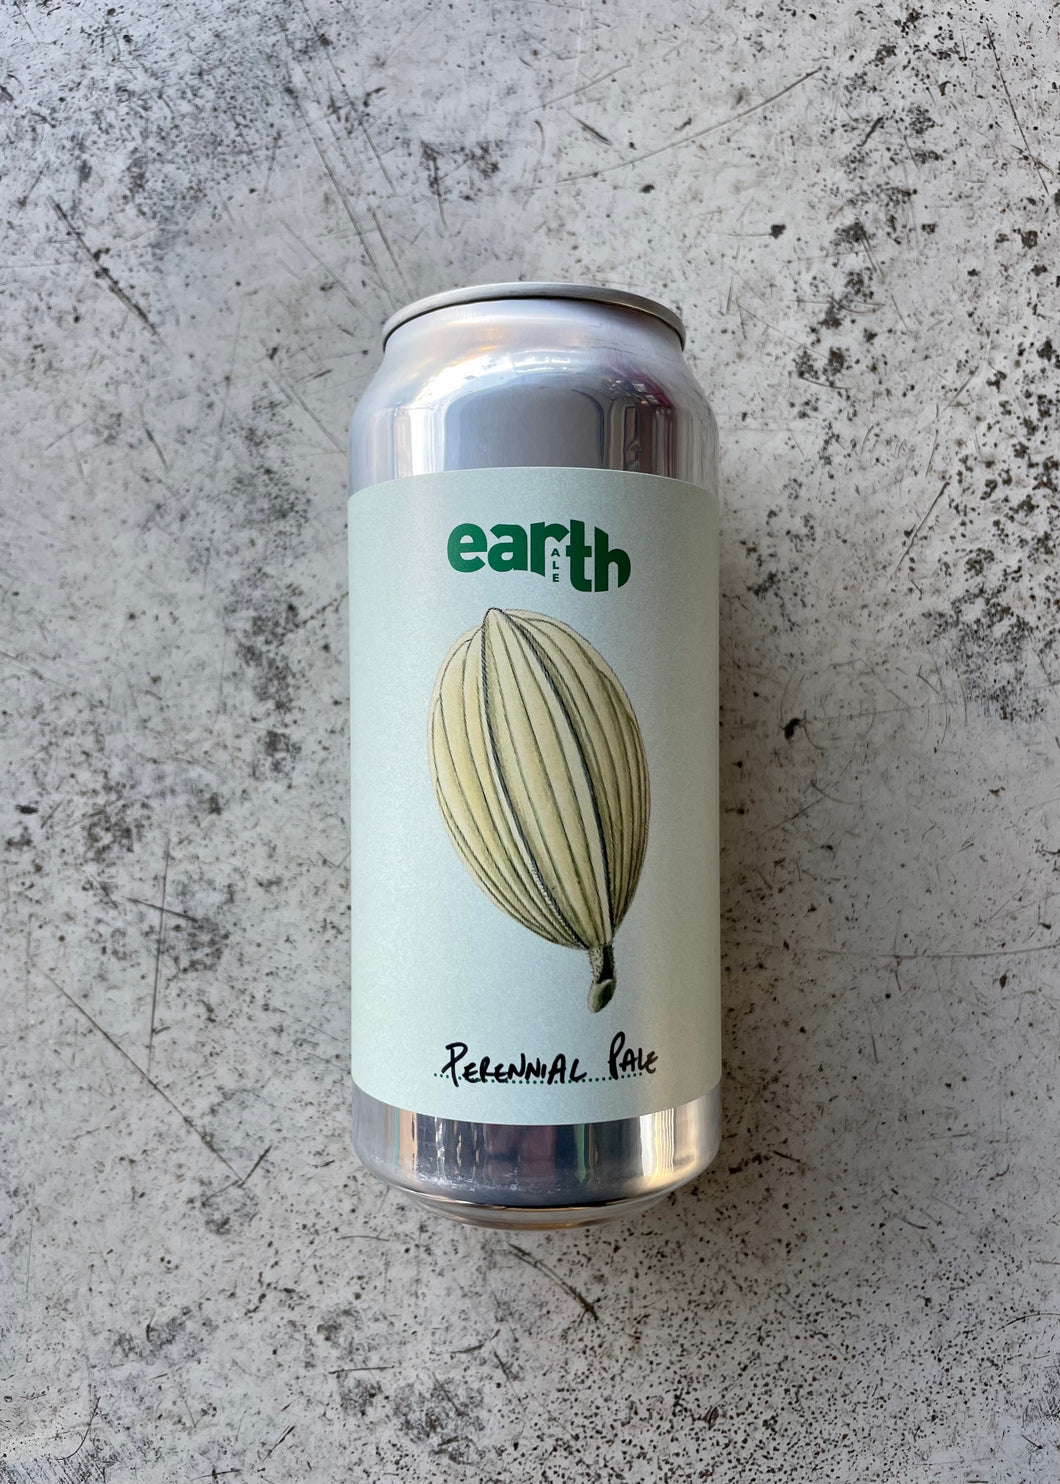 Earth Ale Perennial Pale 5.5% (440ml)